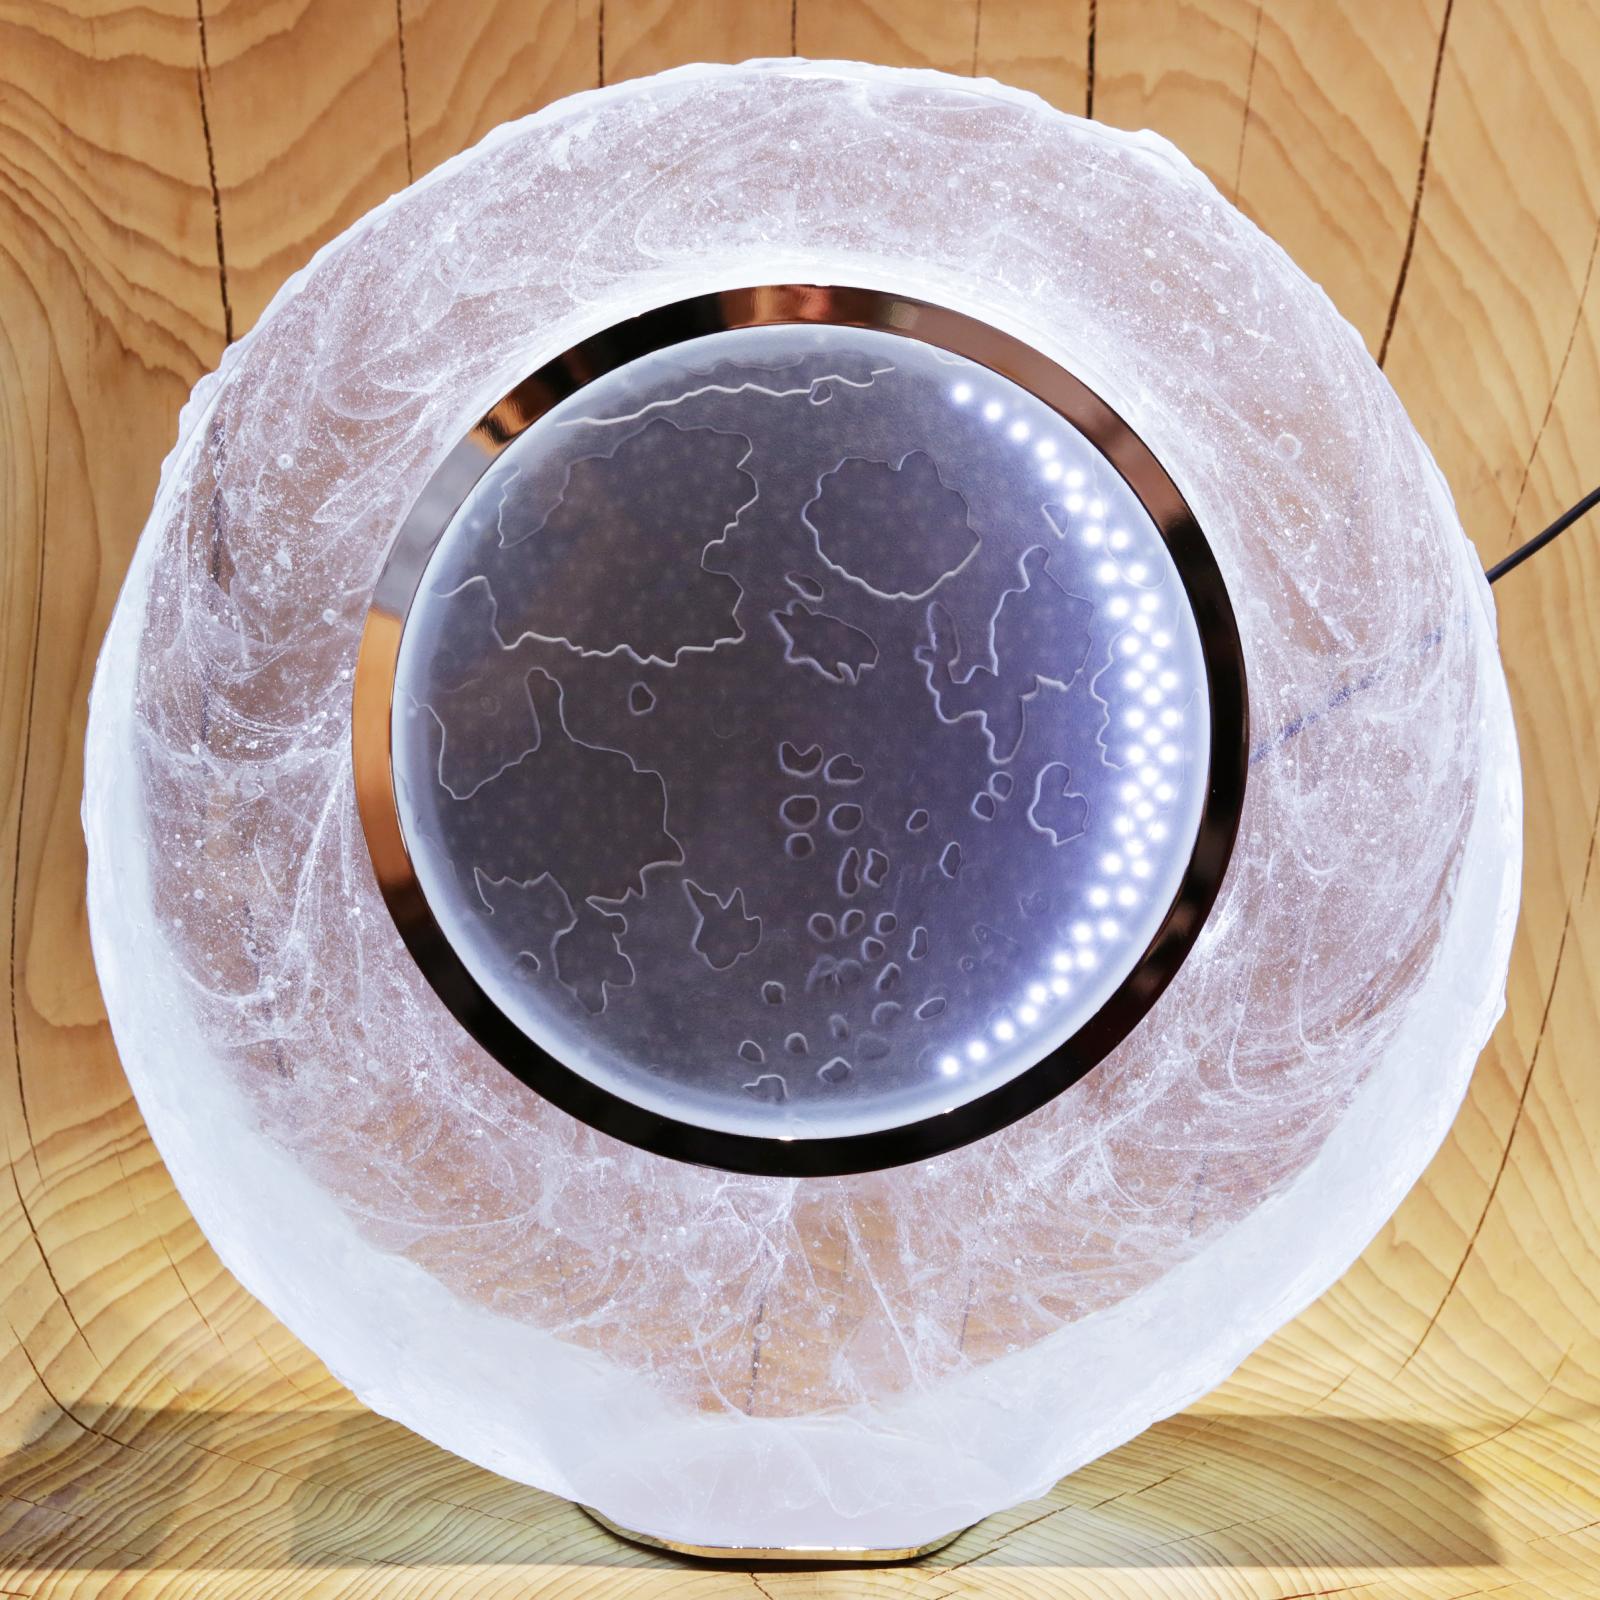 Monduhr aus reinem Kristallglaspaste, hergestellt in Frankreich im Jahr 2018.
Uhr, die das Mondalter anzeigt, zeigt auch die Sonnenauf- und -untergänge des Mondes an.
Es sind große Weltstädte geplant. Mond erscheint in Kristallblock gefüllt
mit